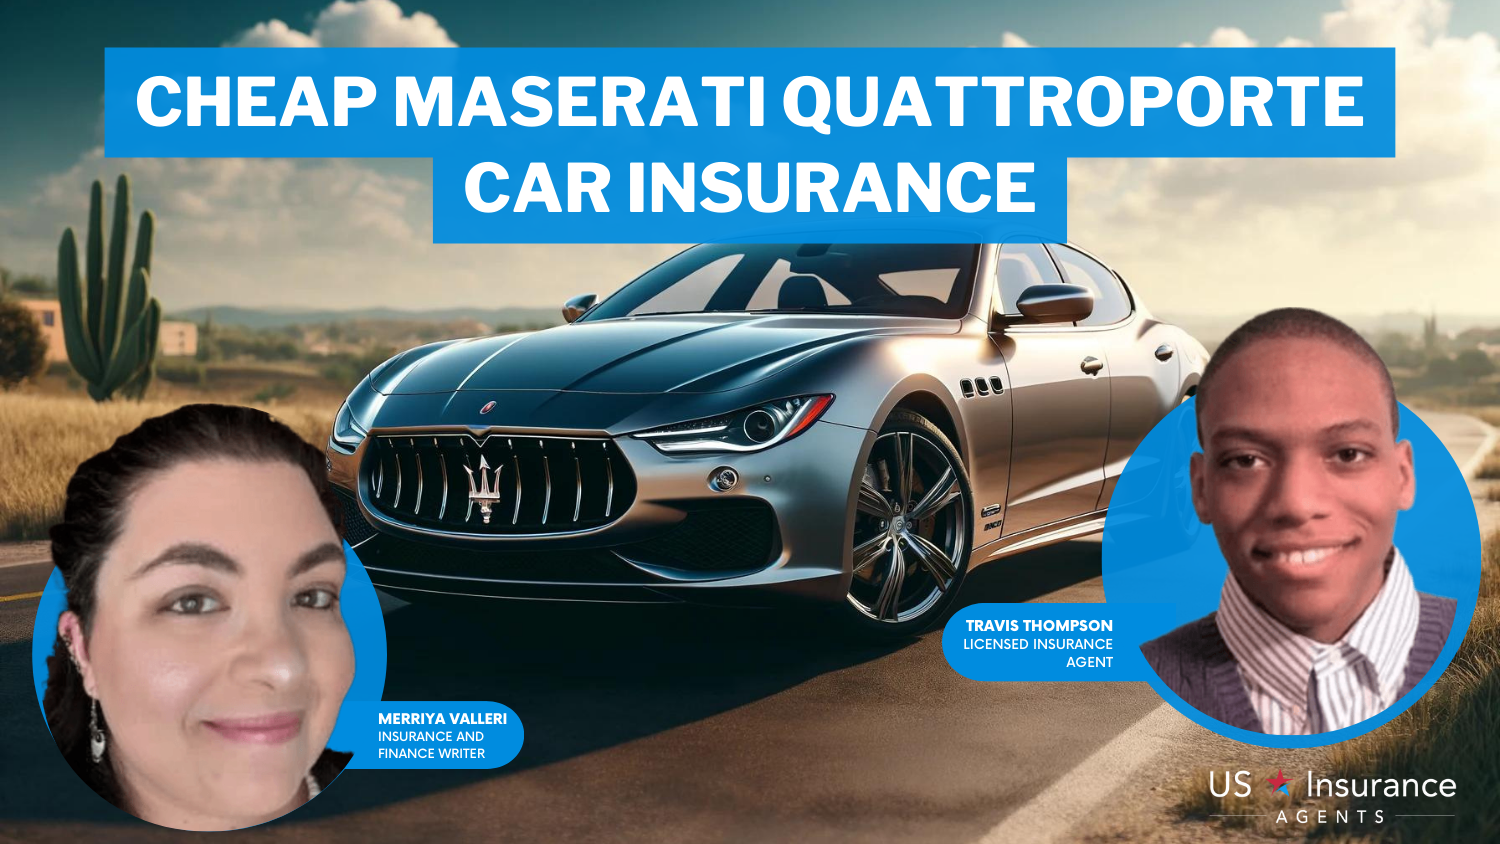 Cheap Maserati Quattroporte Car Insurance: Allstate, Progressive, and Safeco